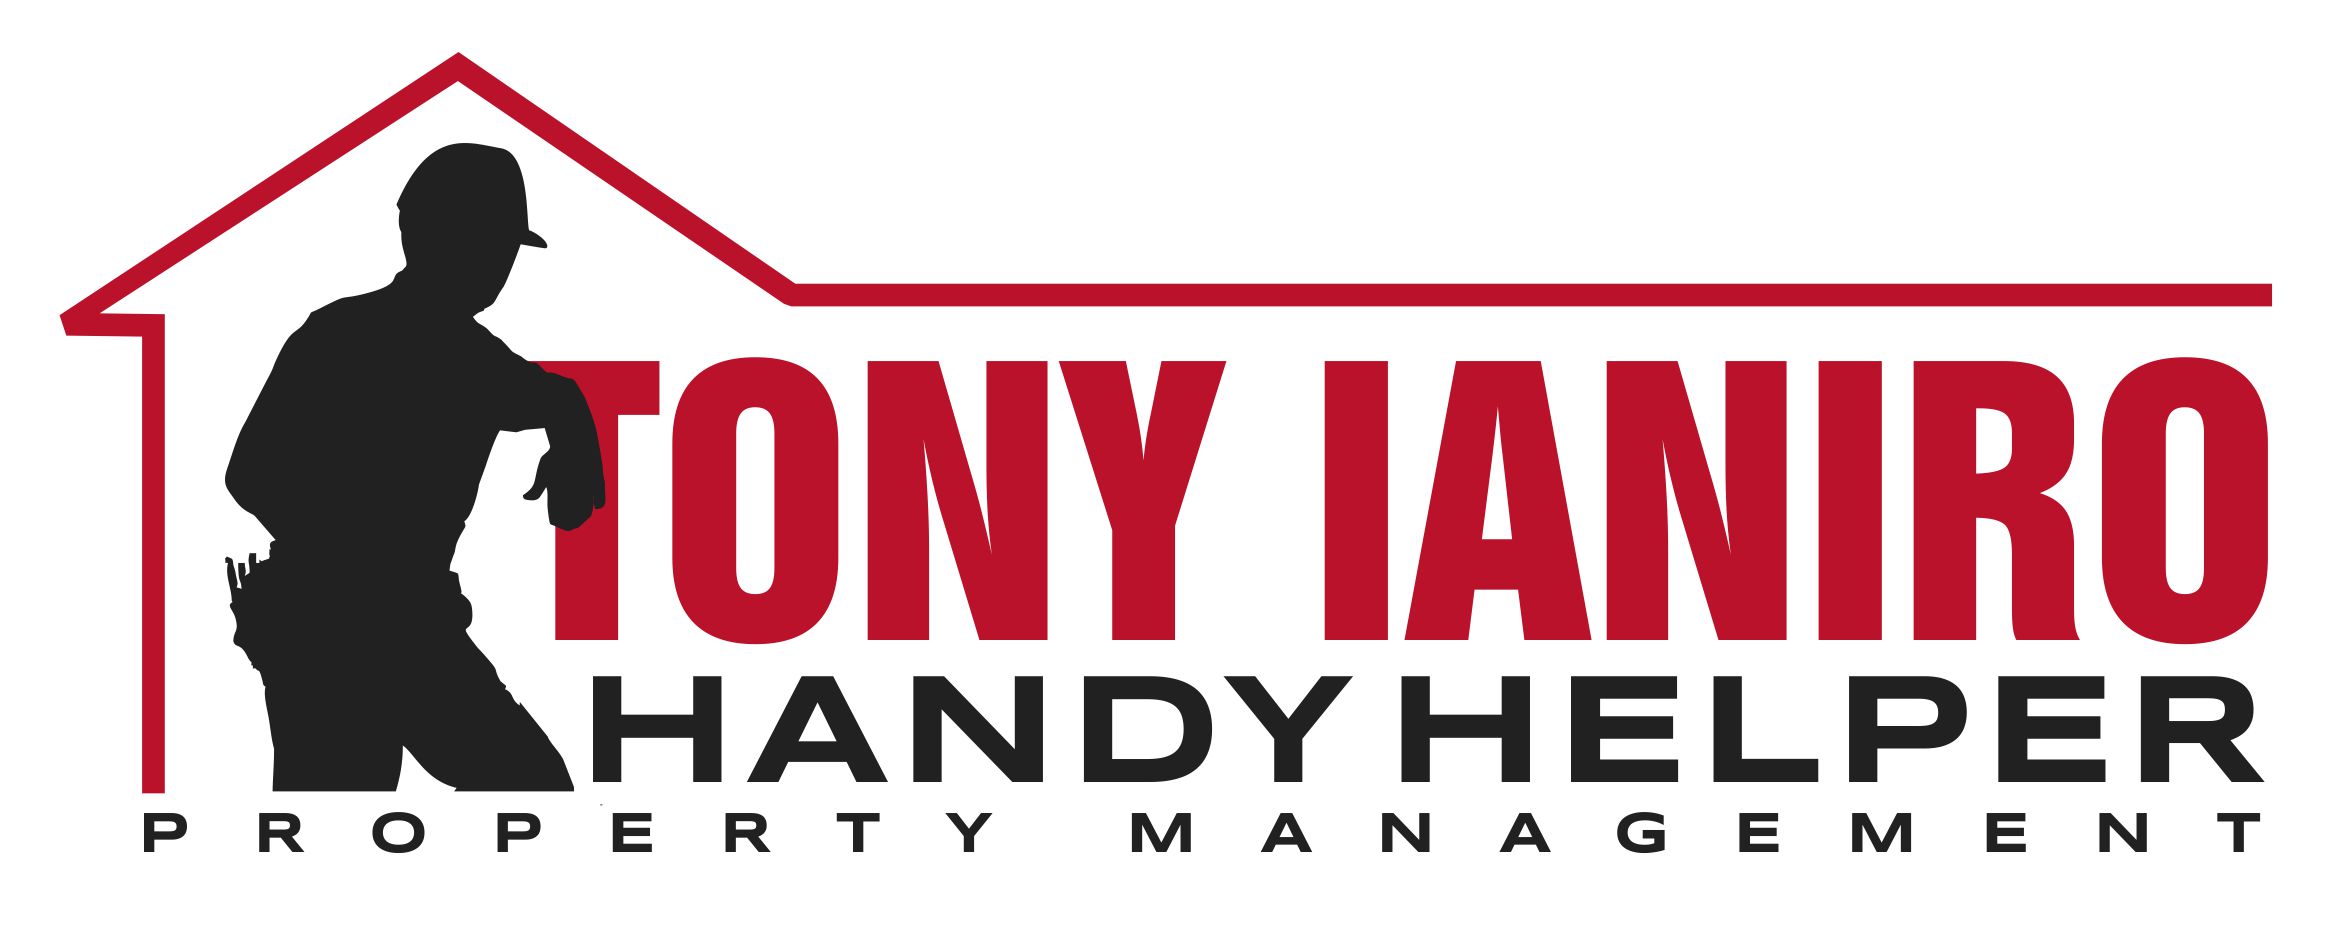 Tony Ianiro Handy Helper, LLC Logo